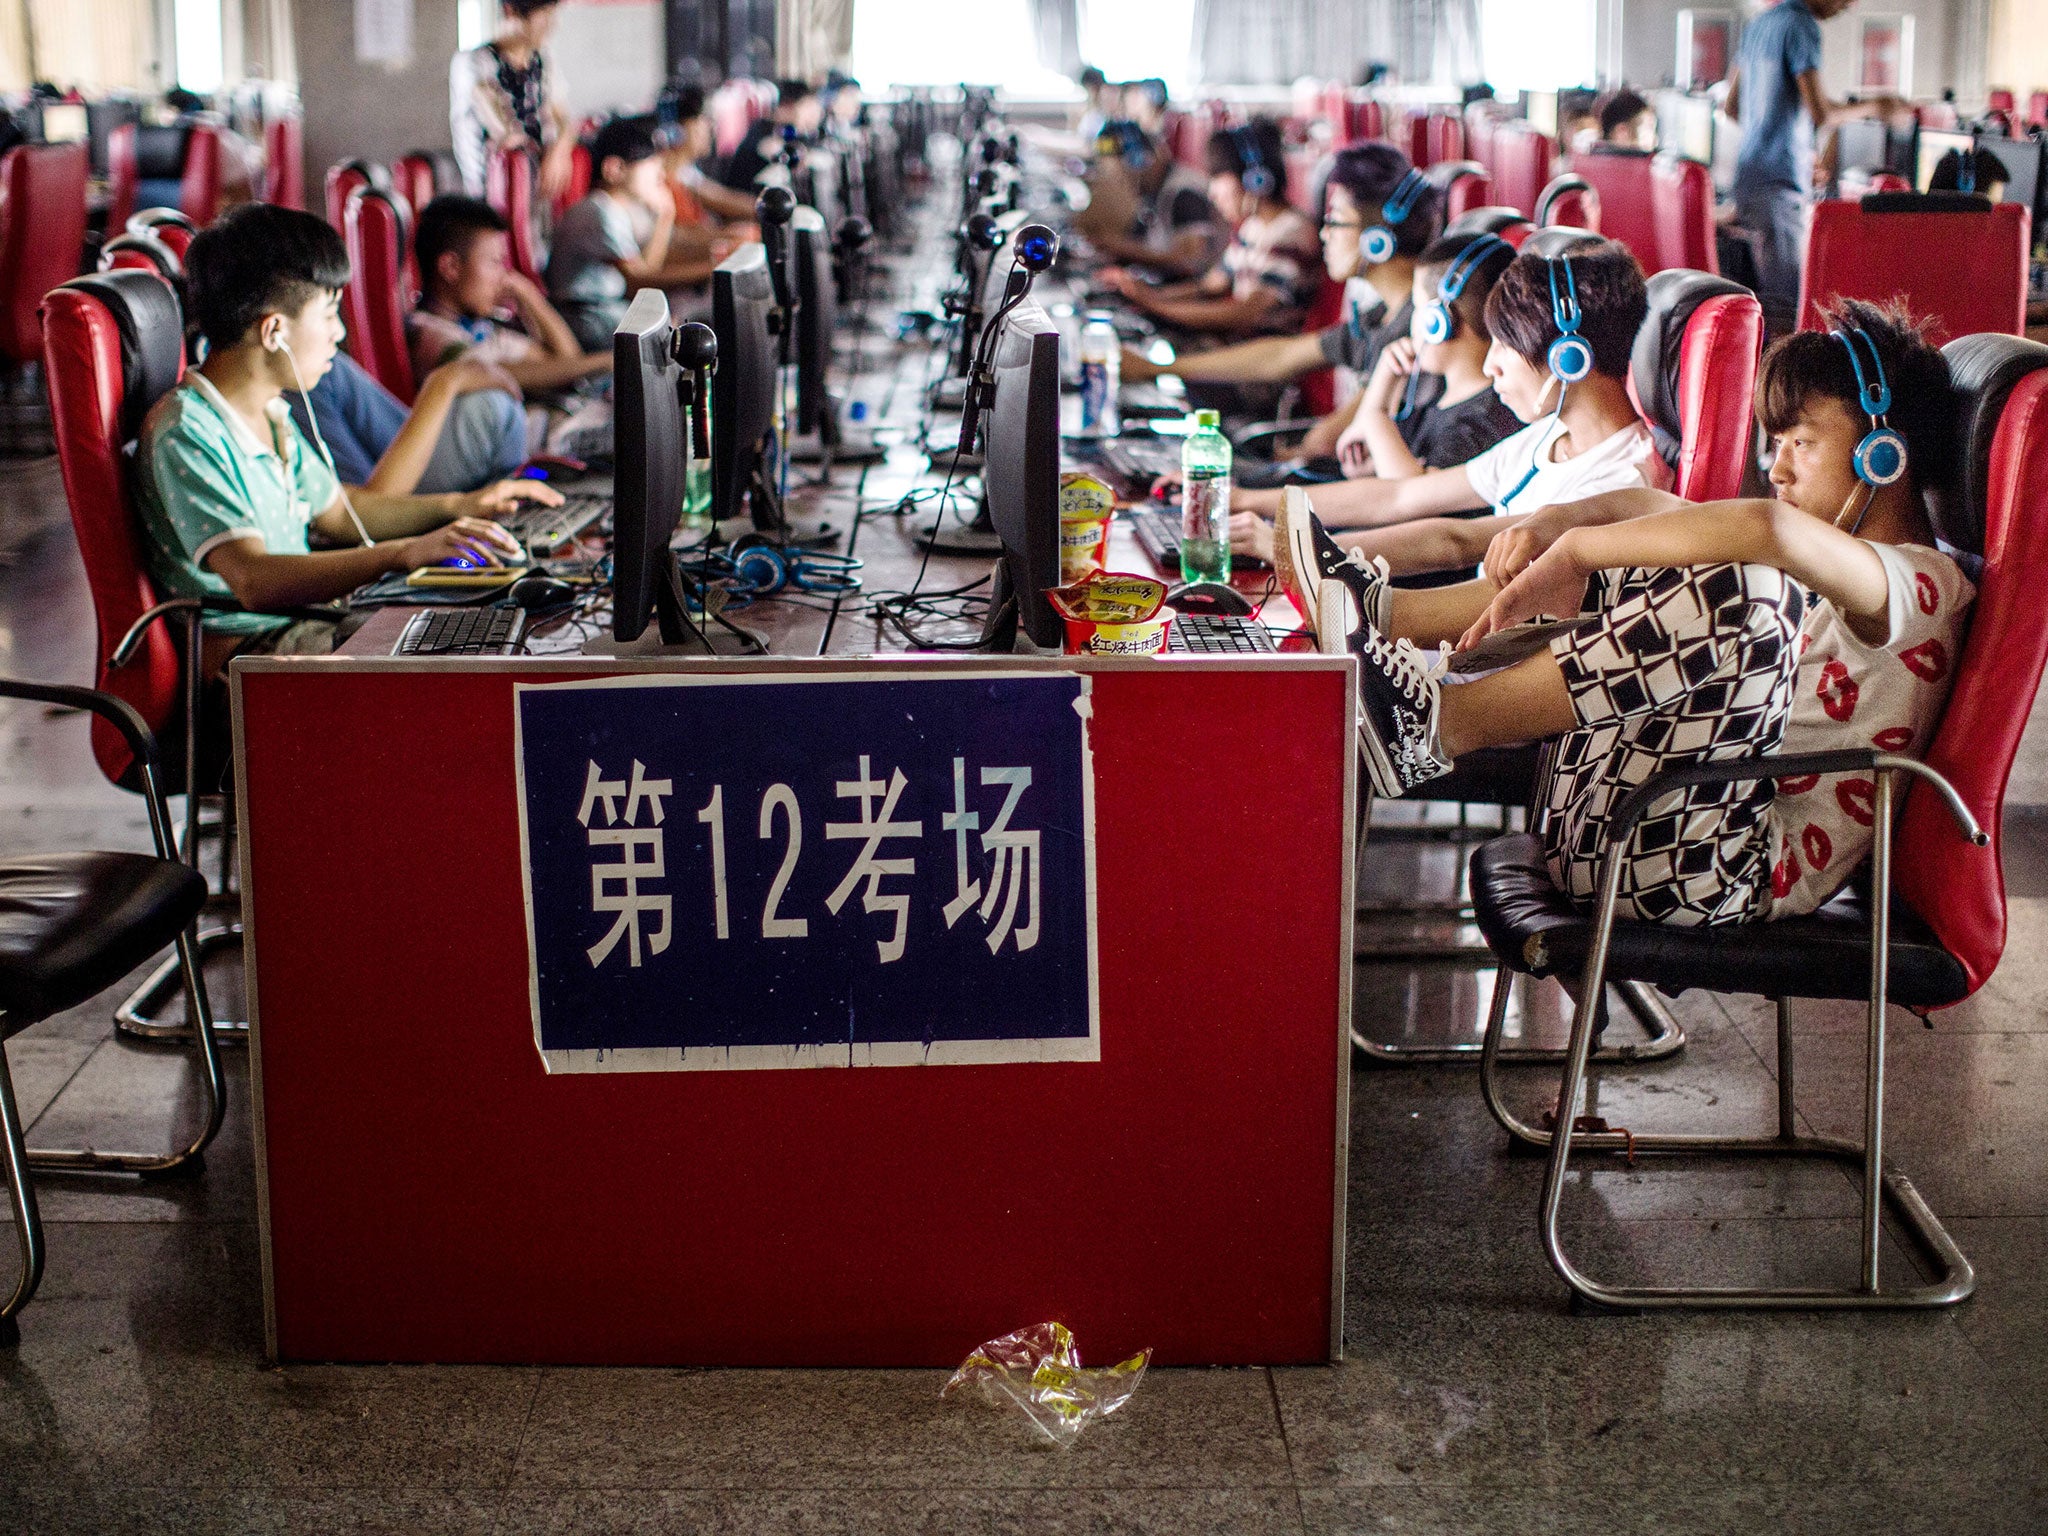 Китайский интернет. Интернет в Китае. Интернет кафе в Китае. Китаец в интернет-кафе. Китайцы в интернете.